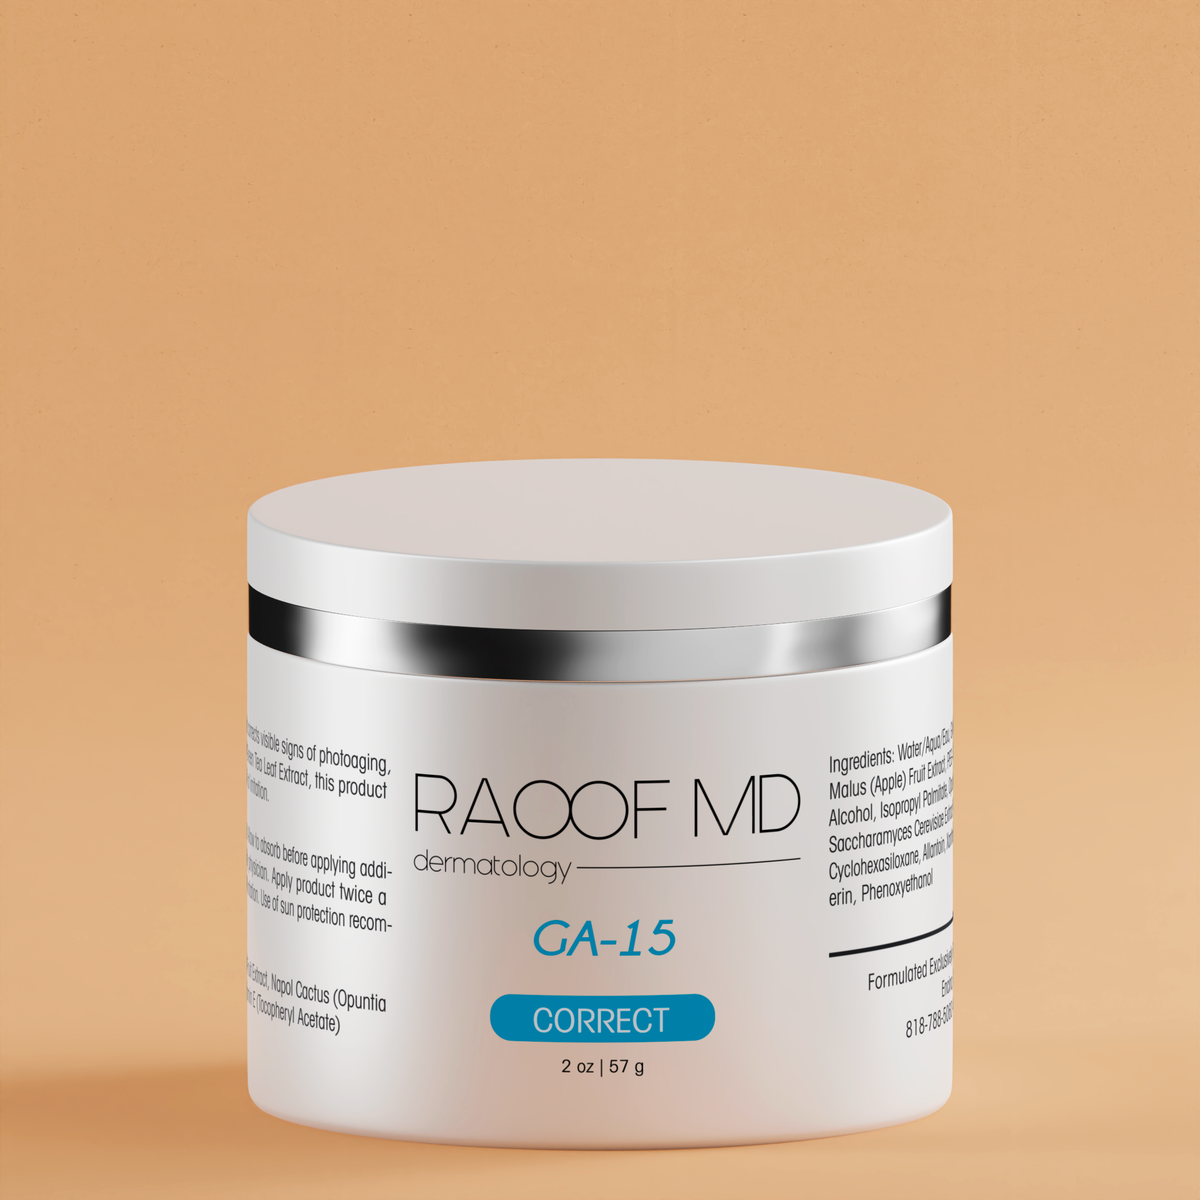 GA 15 by RAOOF MD Dermatology bottle